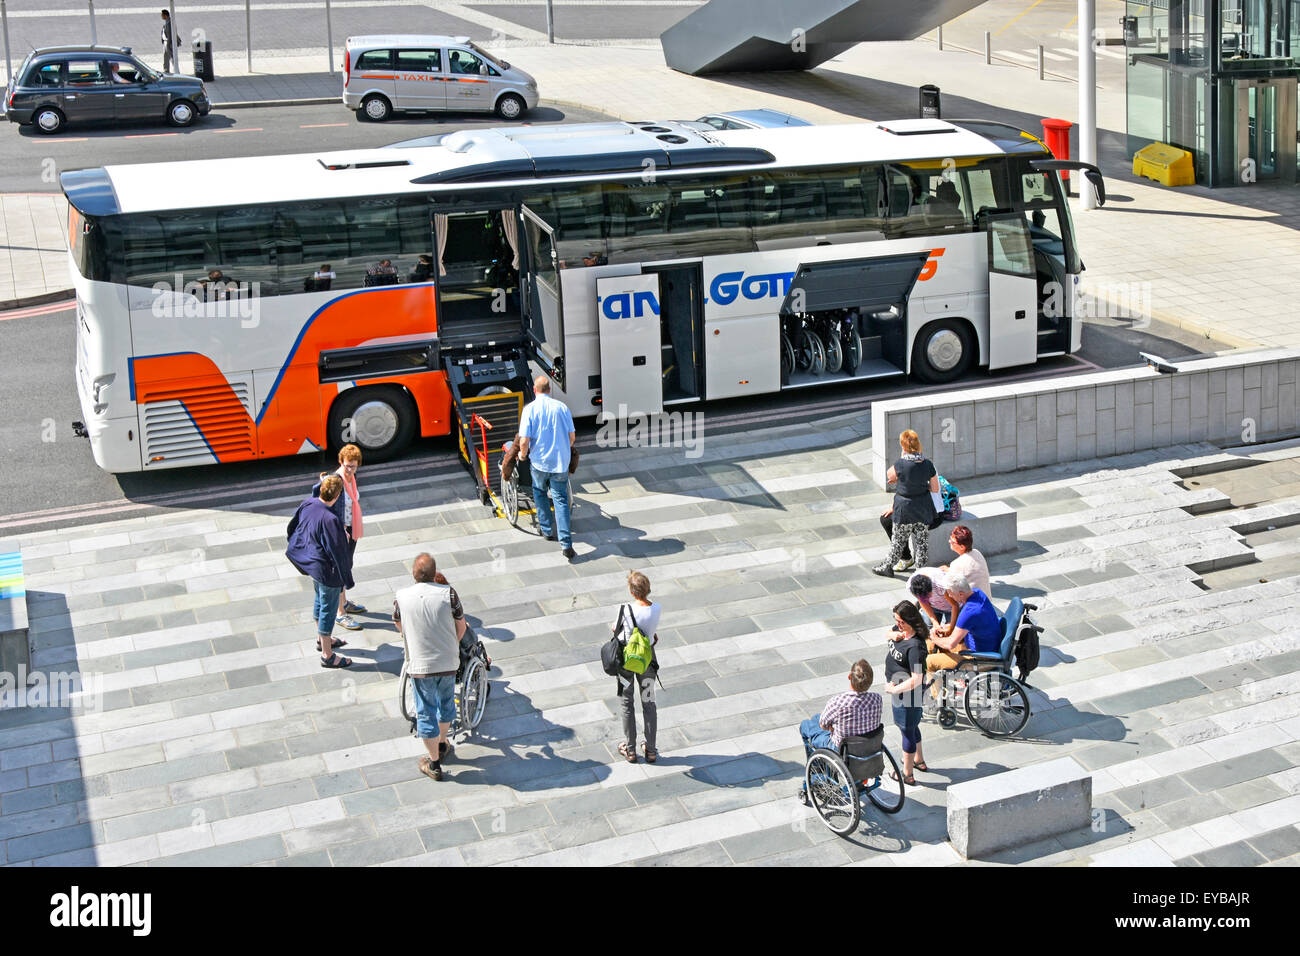 Rollstuhl Benutzer Passagiere warten Plattform Aufzug auf Coach bus angepasst für behinderte Menschen zu reisen ((siehe Alamy zusätzliche Info Panel für Hubwerk) Stockfoto